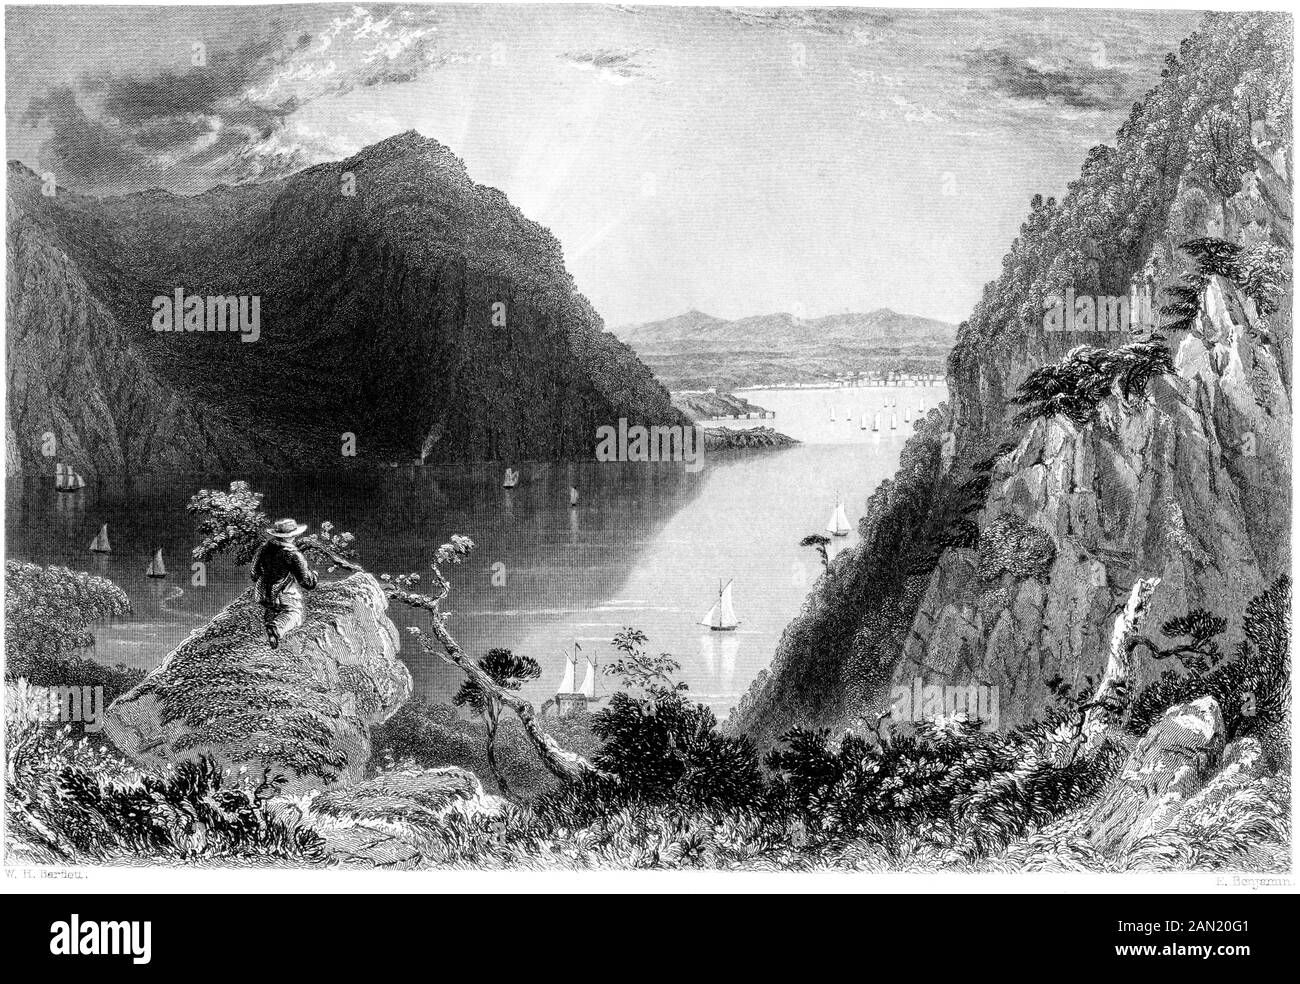 Ein Kupferstich von Hudson Highlands (von Bull Hill) gescannt bei hoher Auflösung. aus einem Buch im Jahre 1840 gedruckt. Glaubten copyright frei. Stockfoto